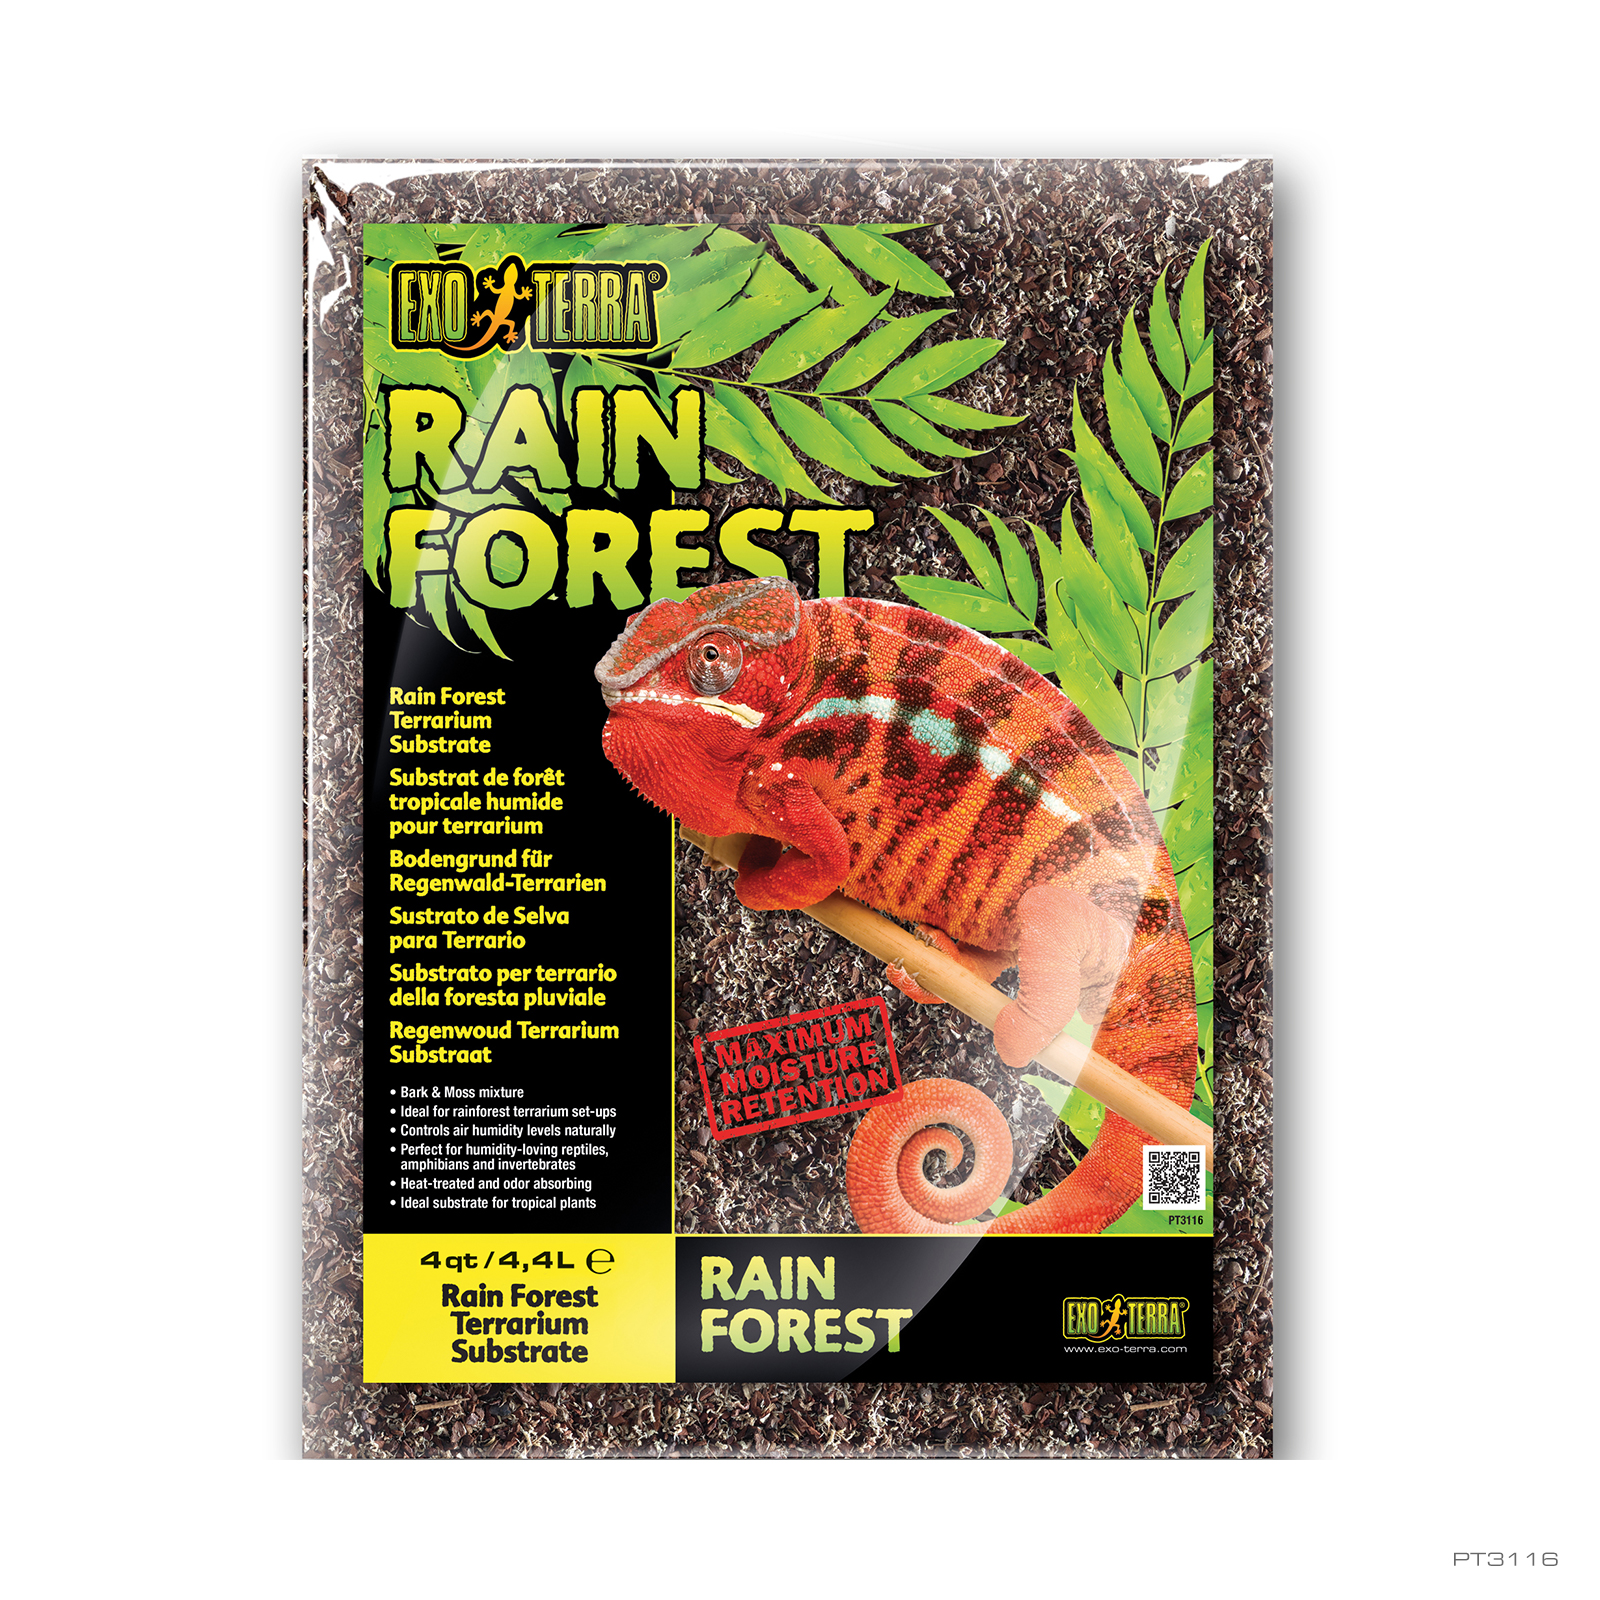 Rain Forest 4QT - 4,4L